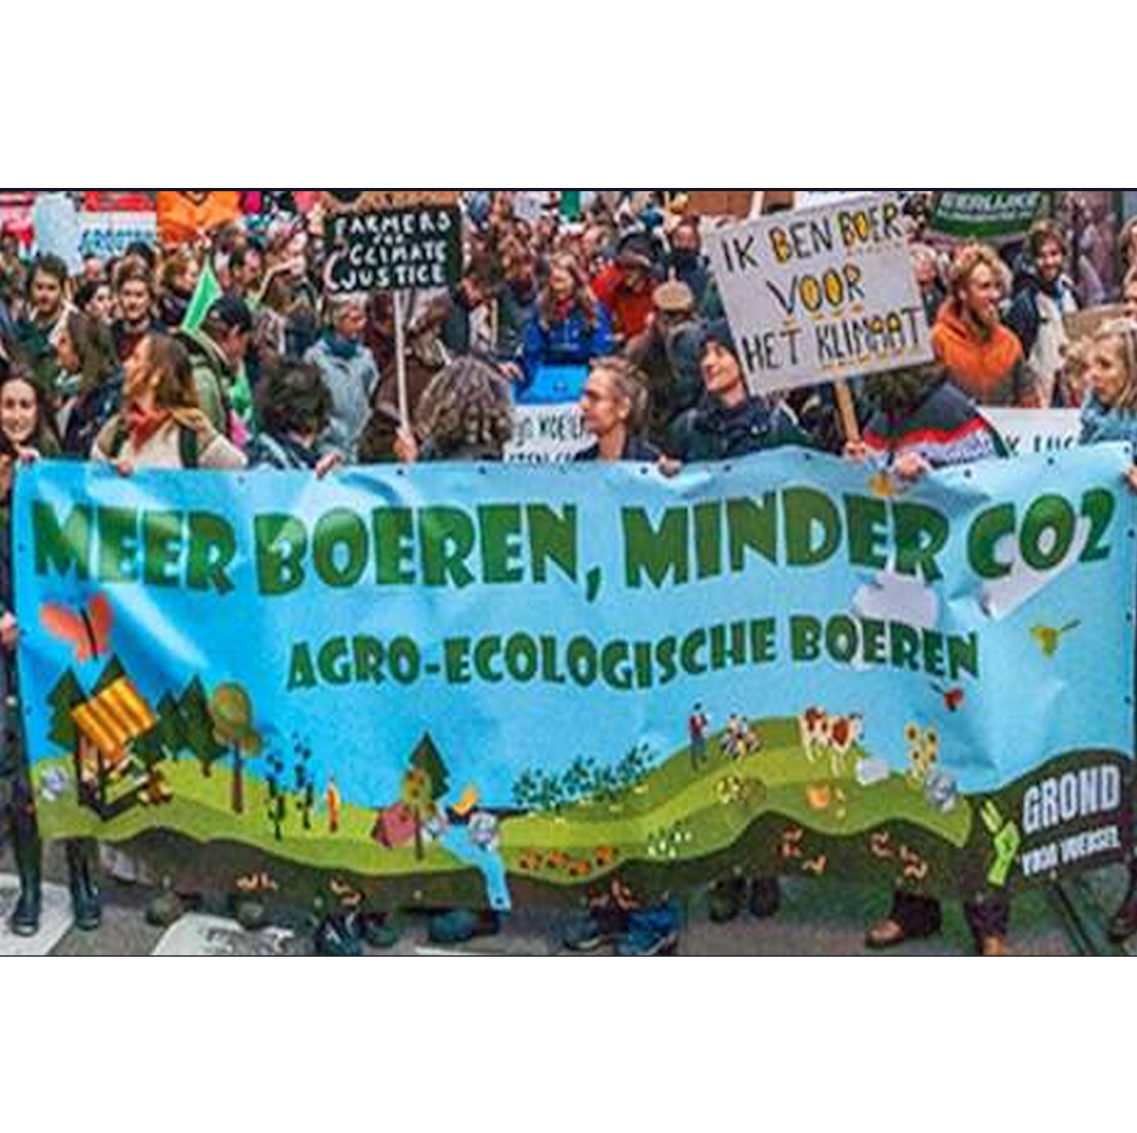 Protestmanifestatie voor een ander landbouwmodel: agro-ecologische landbouw met meer boeren en minder CO2-uitstoot (foto: Boerenforum).